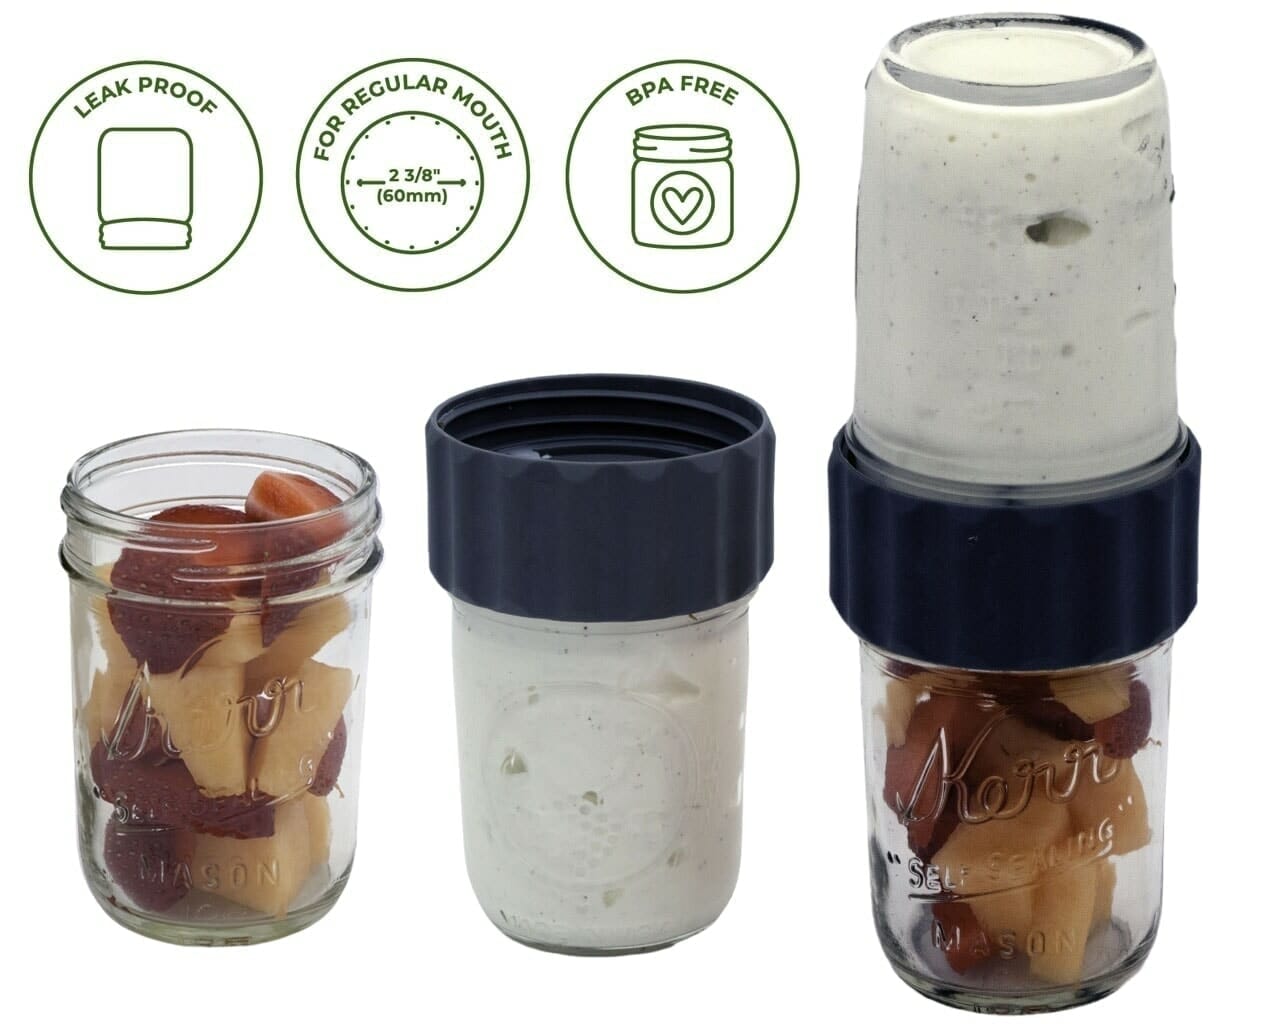 Wood Mason Jar Lids - Set of 2 – HeritageHome